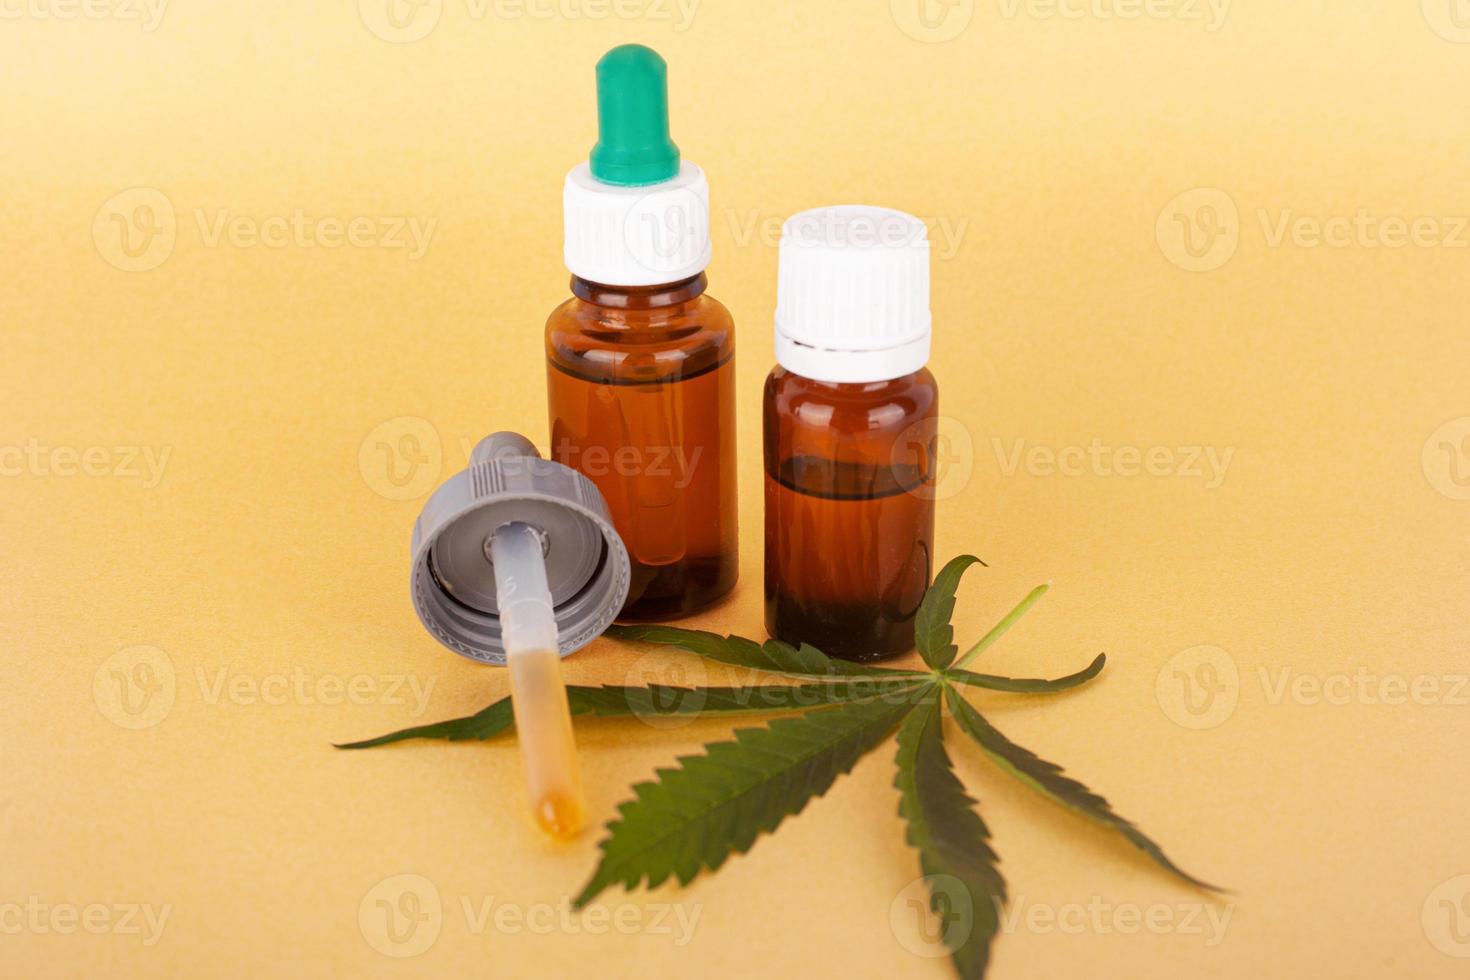 extrahera medicinsk cannabisolja, växtbaserad elixir och naturläkemedel mot stress och sjukdom foto